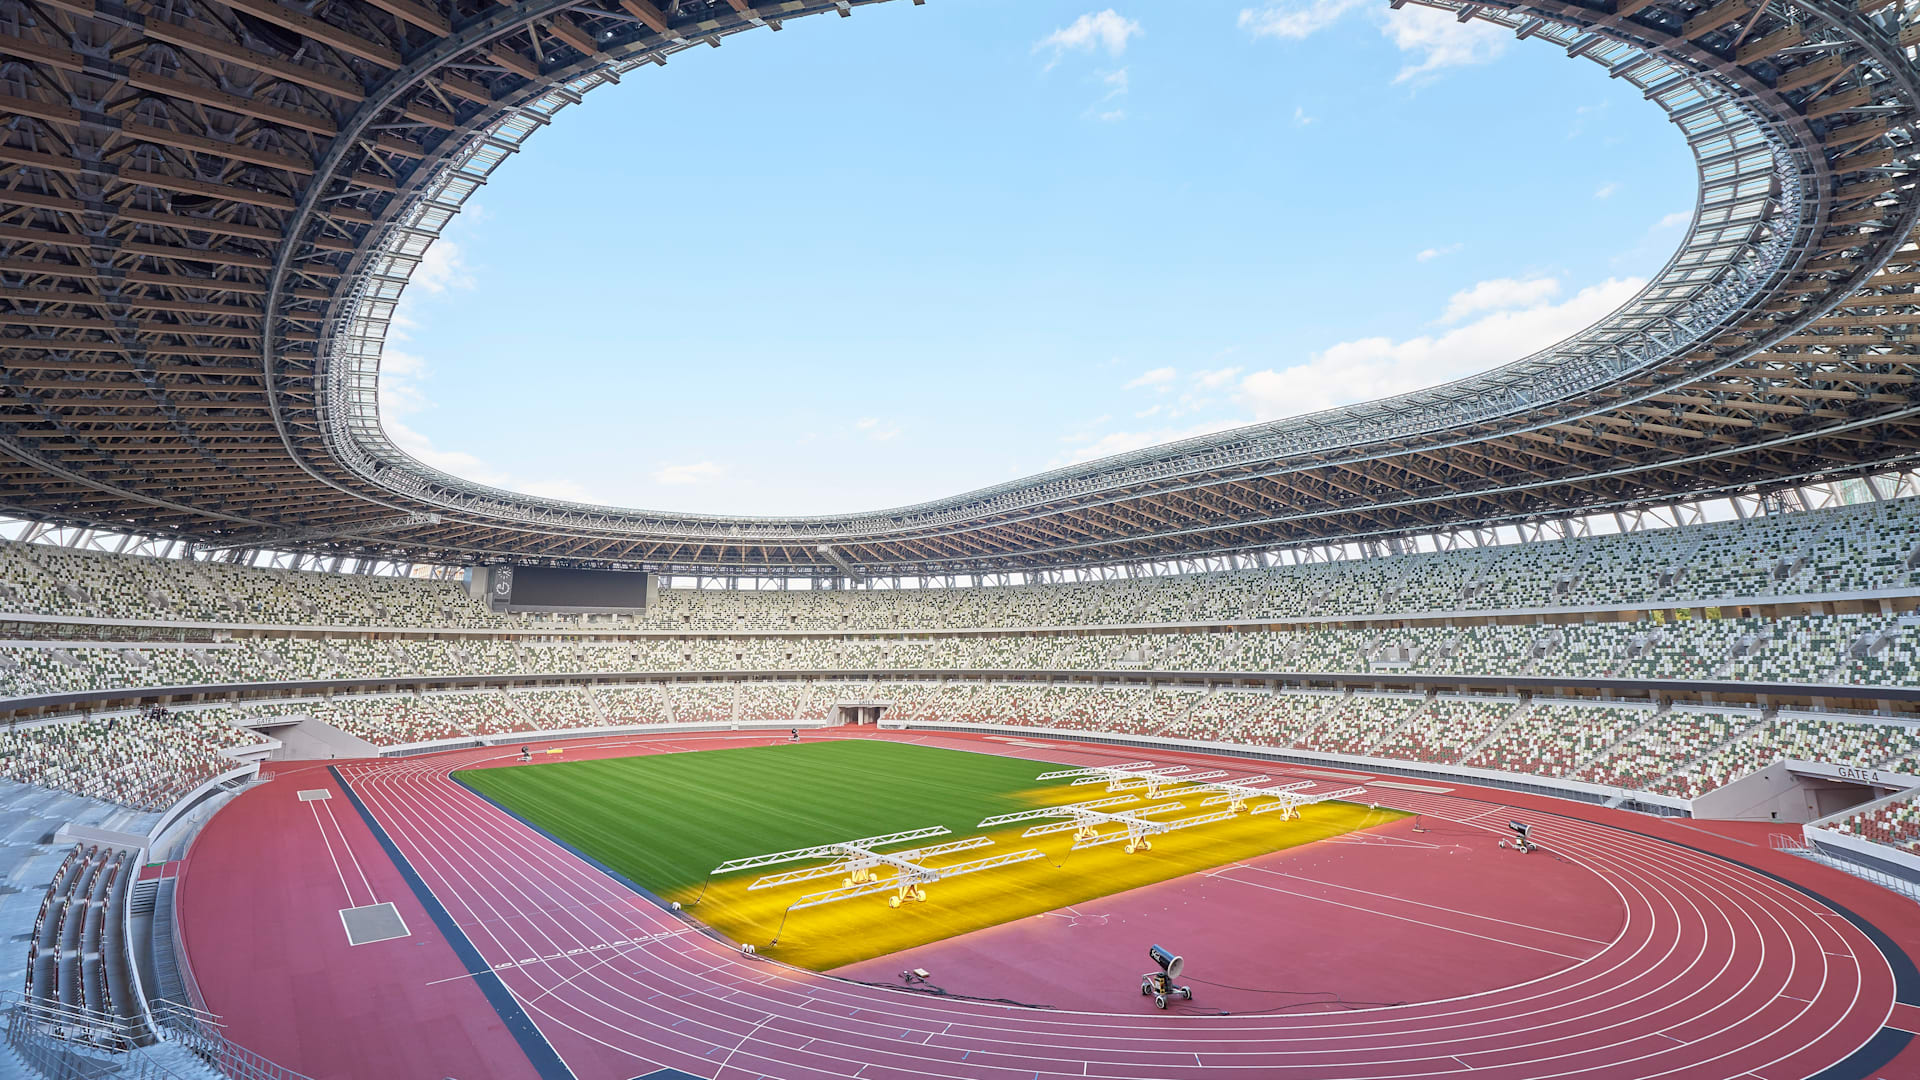 東京2020大会の開閉会式が行われる新国立競技場が完成 12月21日に